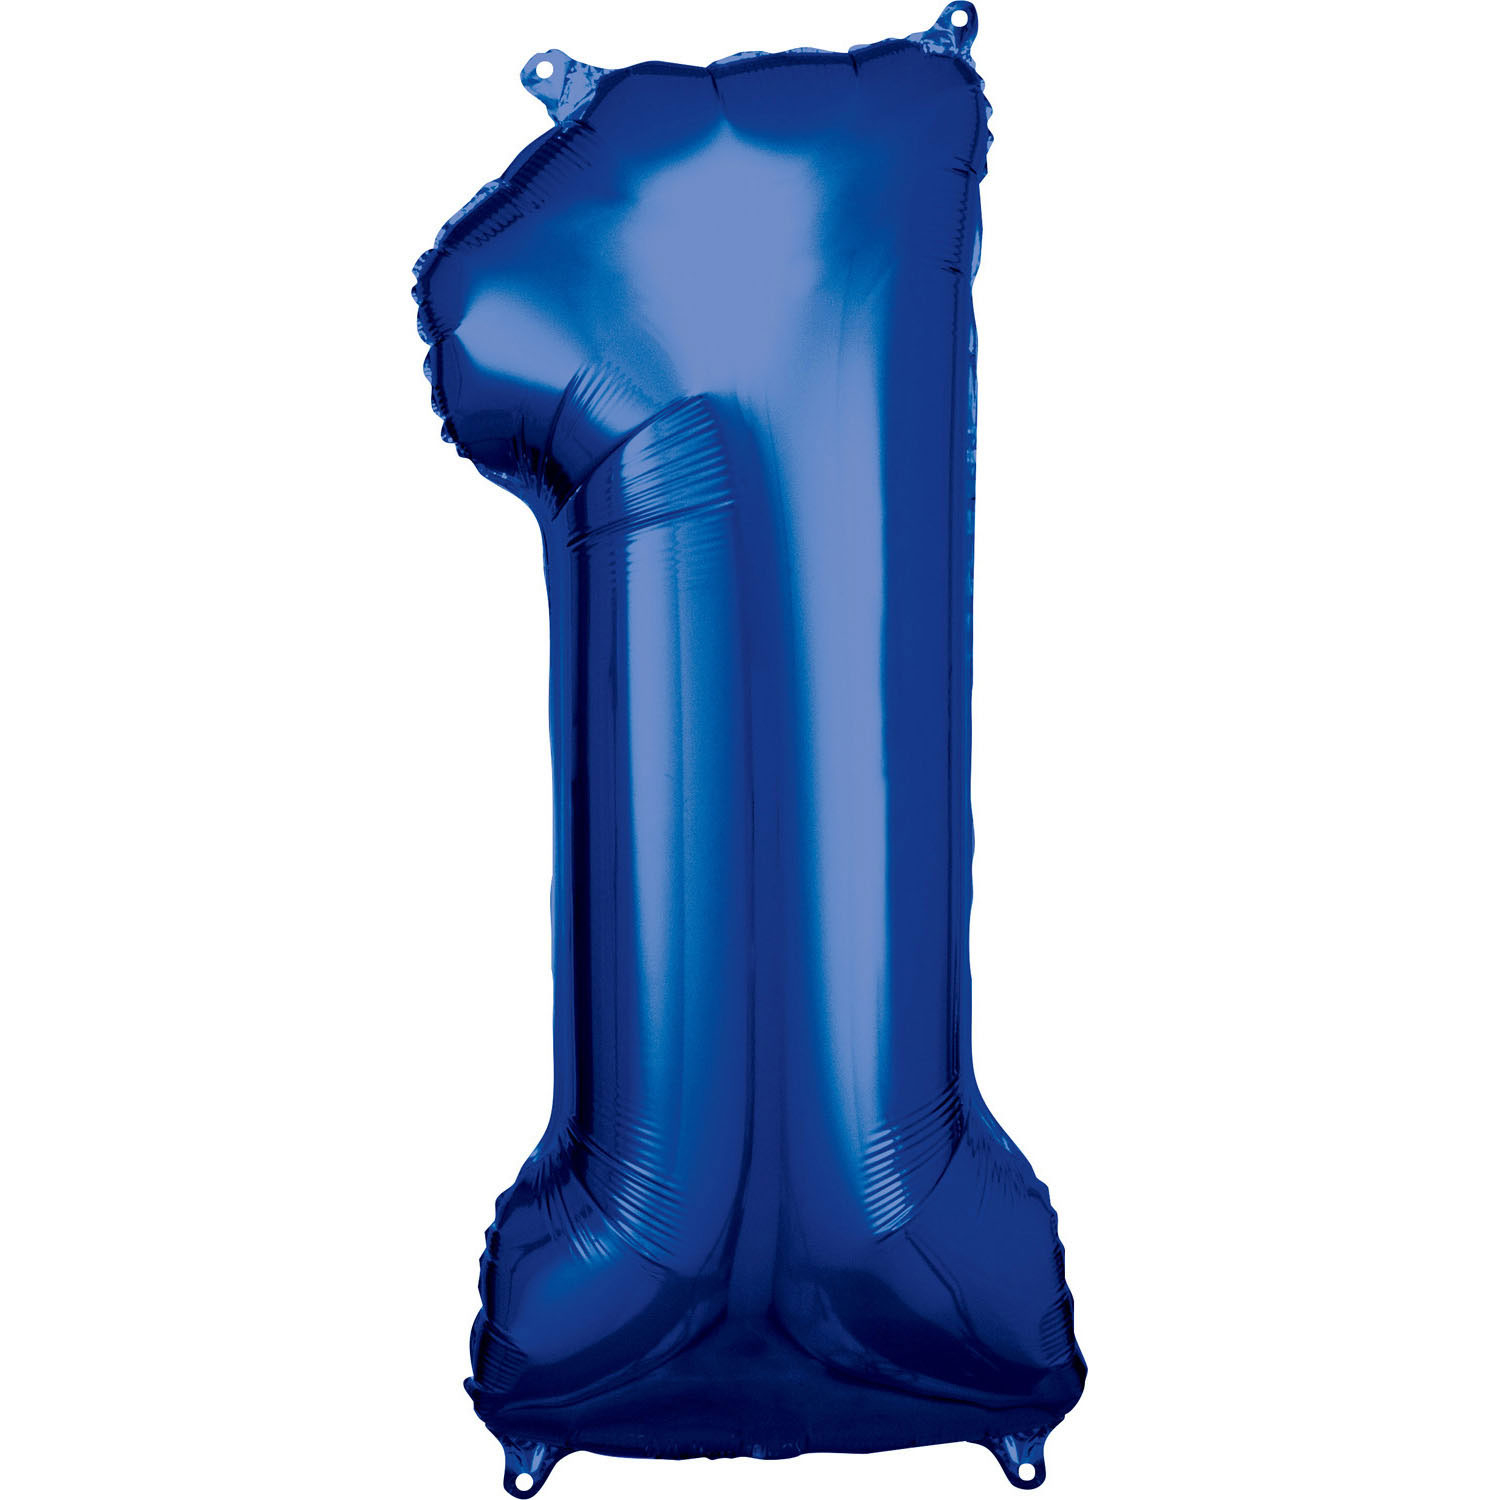 De kamer schoonmaken Smash uitzondering Grote folie ballon cijfer 1 (86cm) - Blauw - Feesthuis